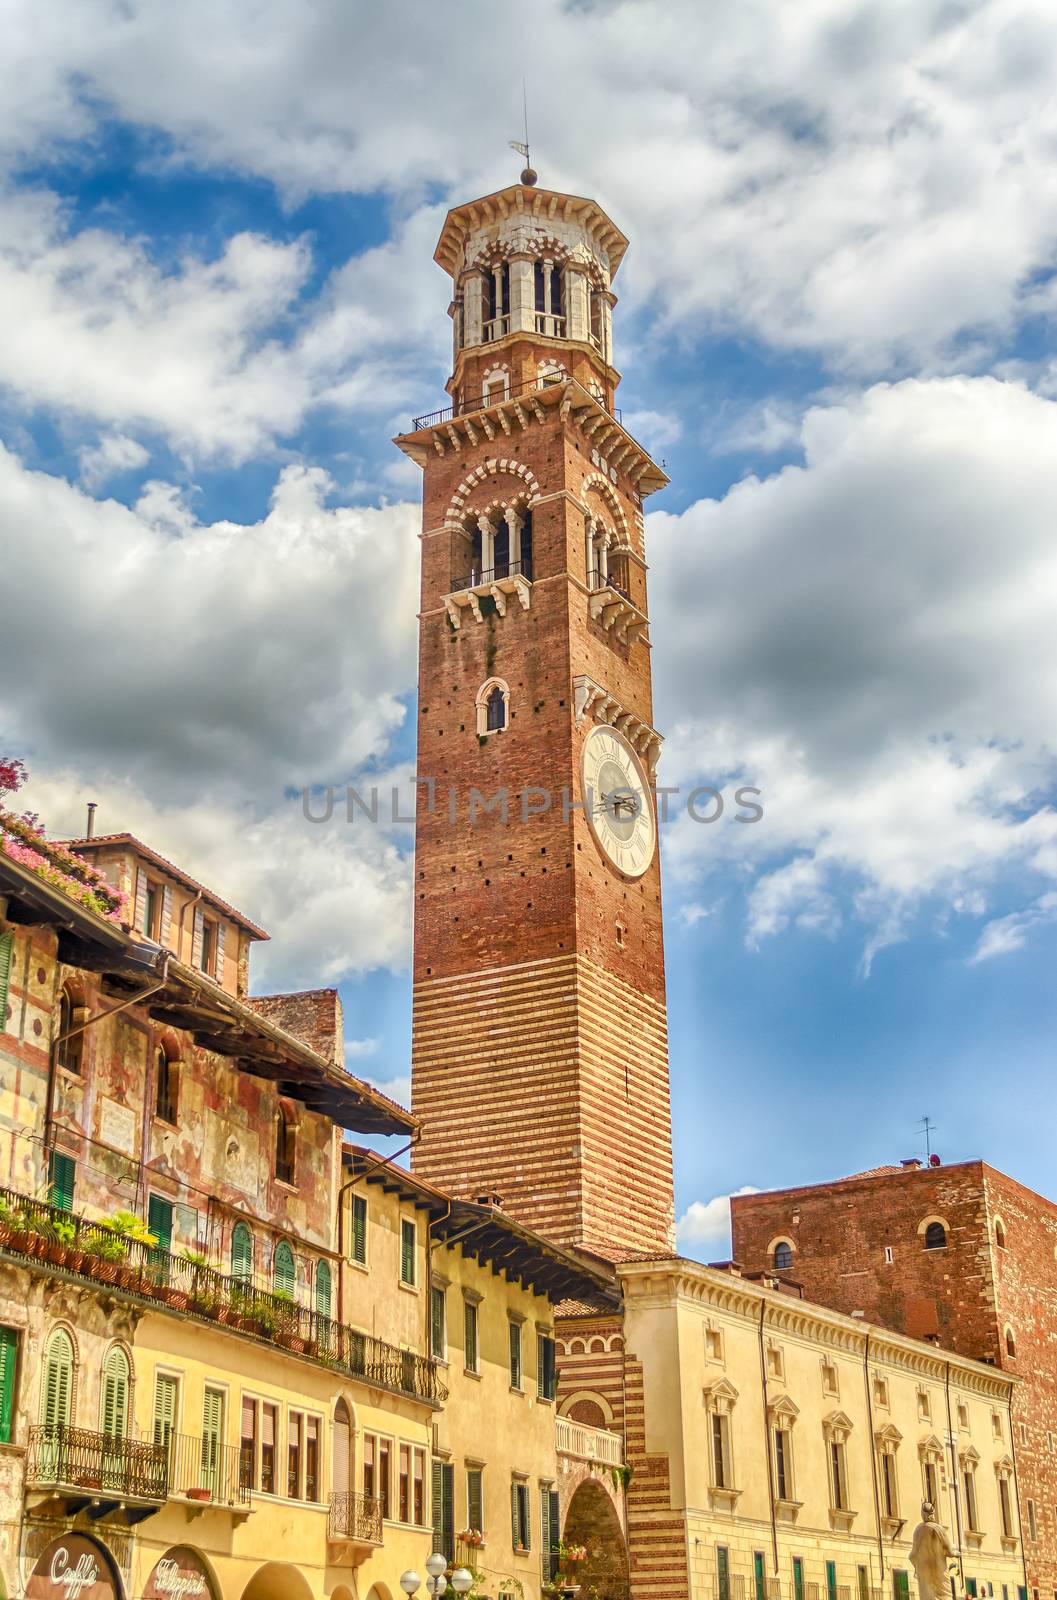 Lamberti Tower at the Palazzo della Ragione, in Piazza Signori in Verona, Italy